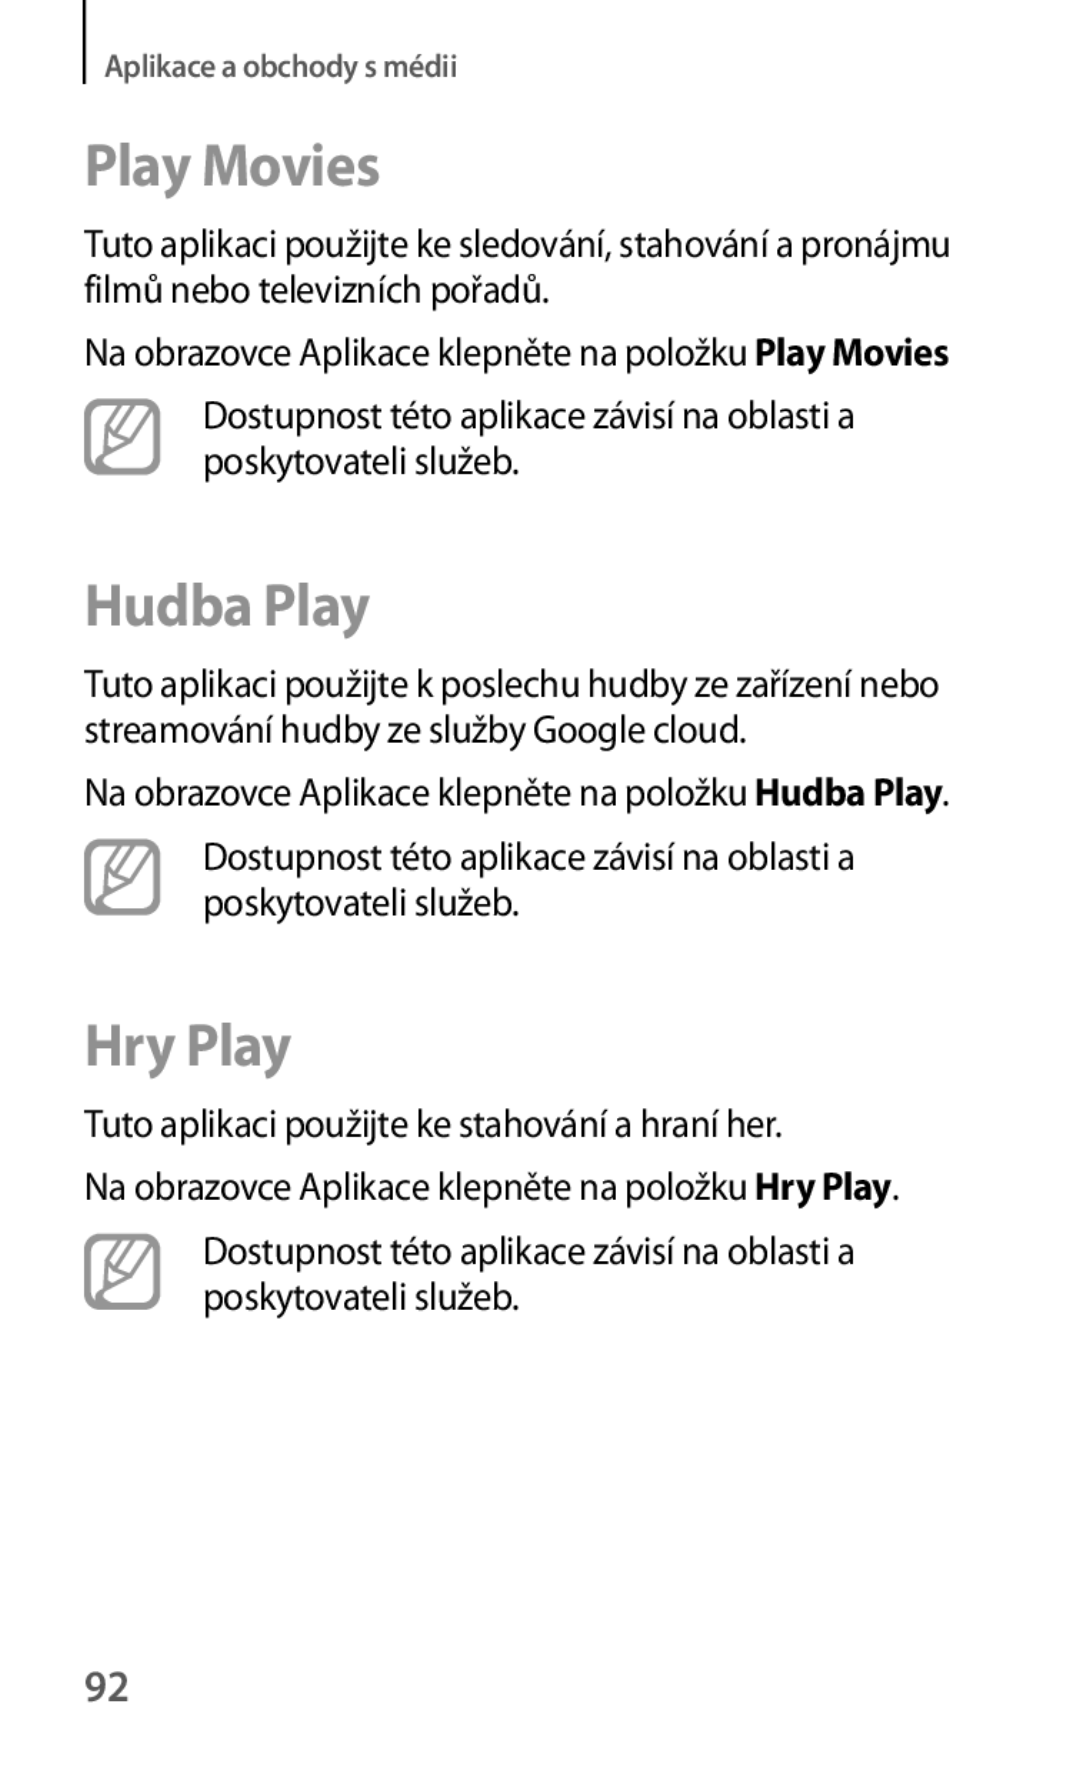 Samsung SM-T530NZWAXEZ, SM-T530NZWAATO Play Movies, Hudba Play, Hry Play, Tuto aplikaci použijte ke stahování a hraní her 